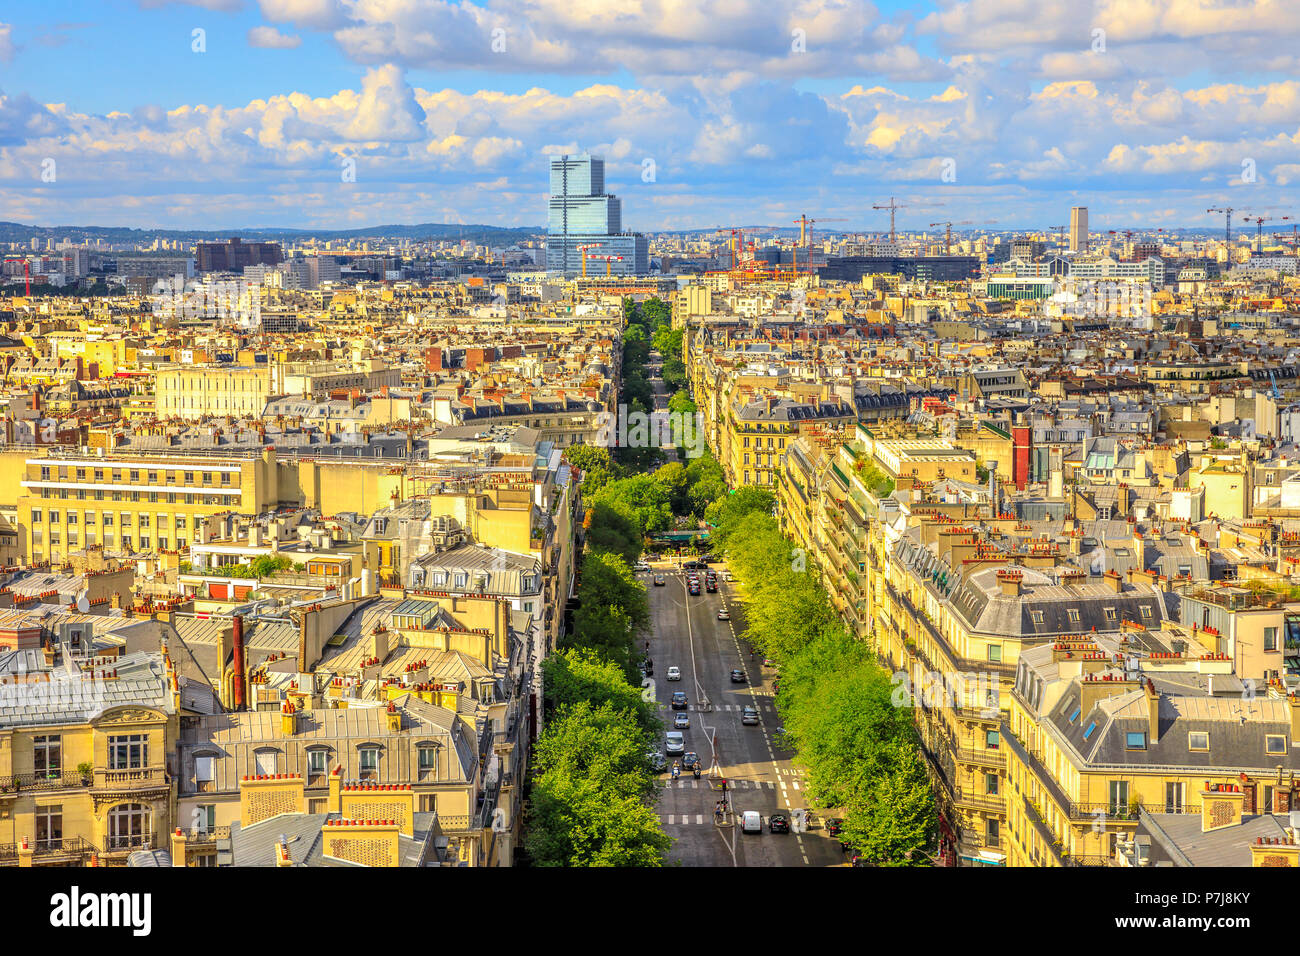 Luftaufnahme der Pariser Skyline von der Arc de Triomphe in einem schönen, sonnigen Tag mit blauen Himmel. Avenue de Wagram vom Triumphbogen. Paris, Hauptstadt von Frankreich in Europa. Malerische Stadt Stadtbild. Stockfoto